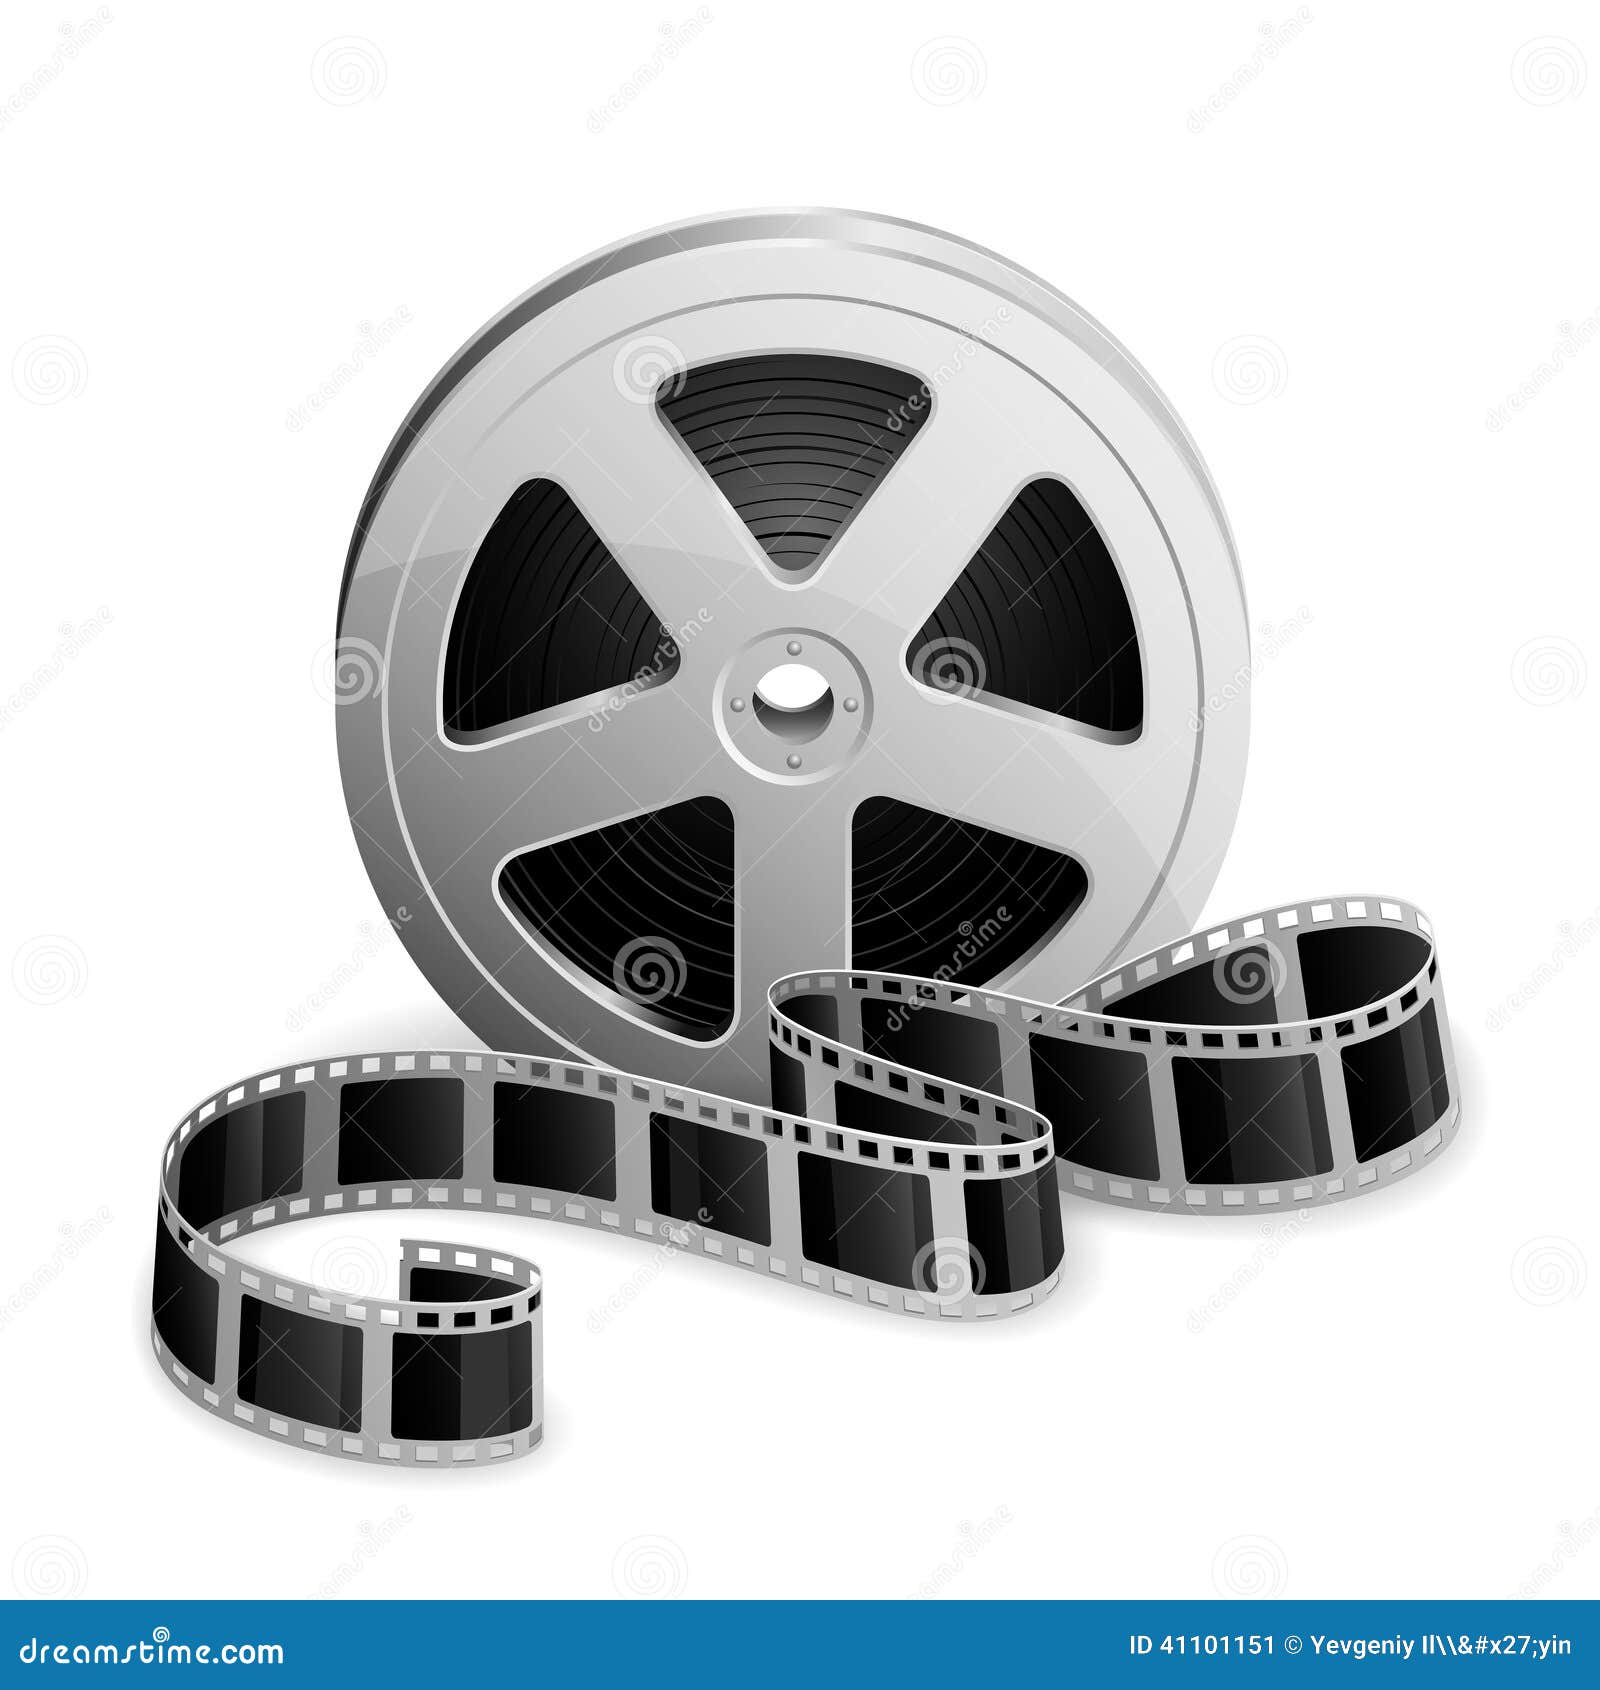 reel of film